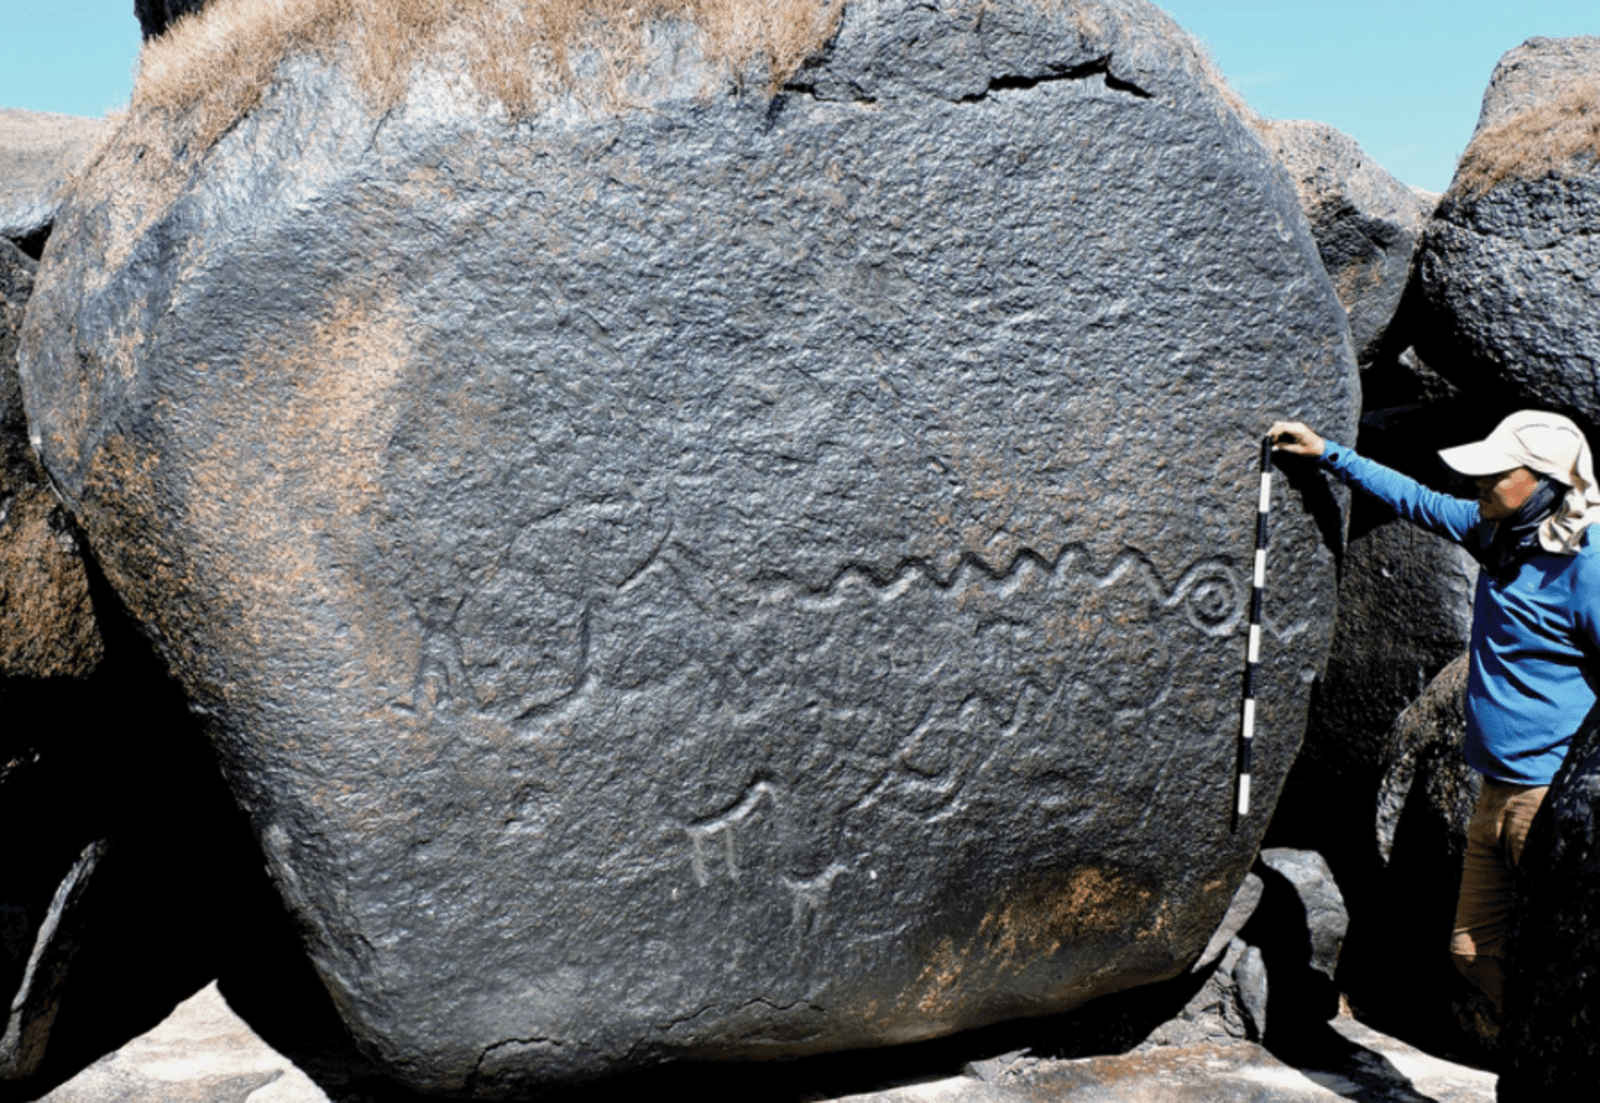 Les gravures retrouvées sur les roches le long de l’Orinoco sont particulièrement massives, certaines mesurant plus de 40 mètres. © Riris, Oliver, Mendieta and al.